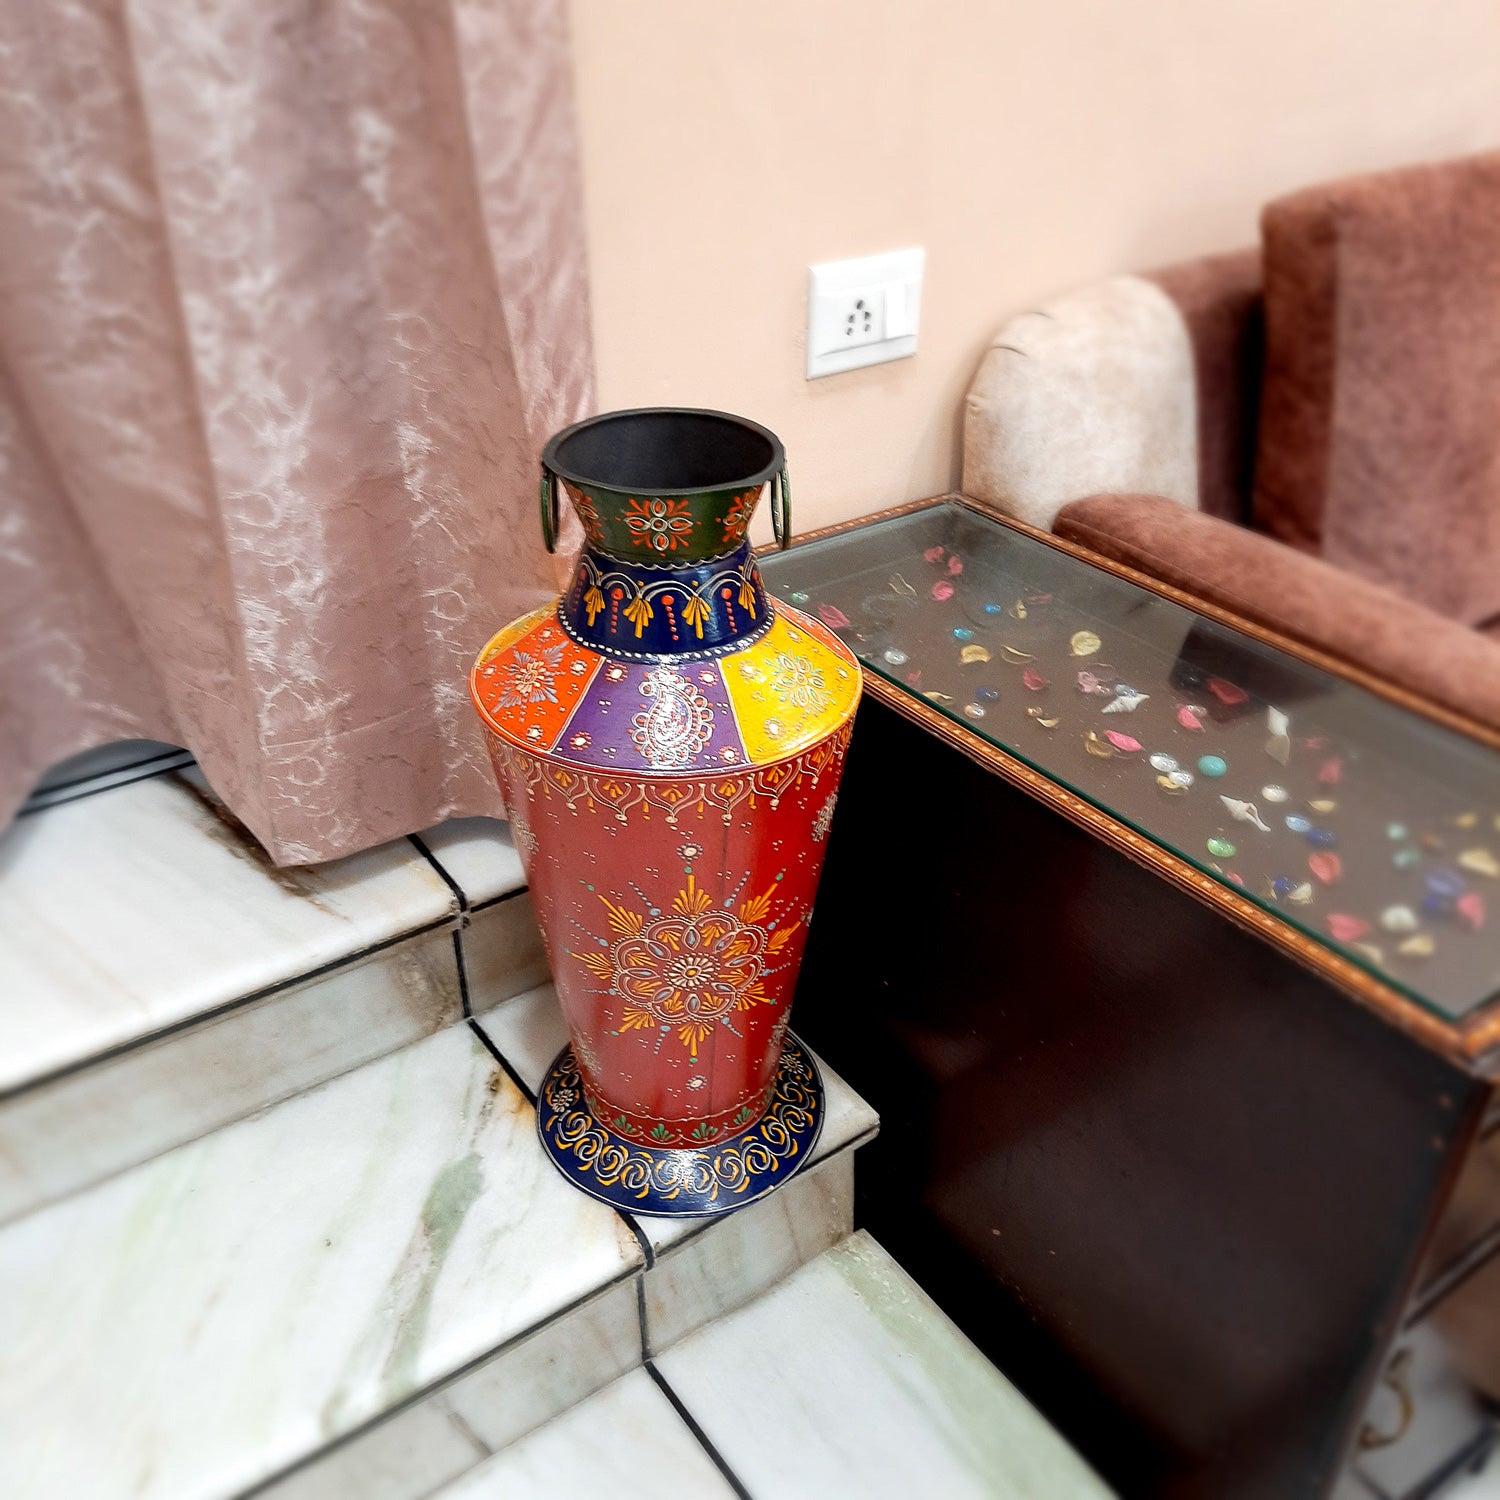 Big Flower Pot - Corner Flower Vase - For Living Room & Entrance - 24 Inch - ApkaMart